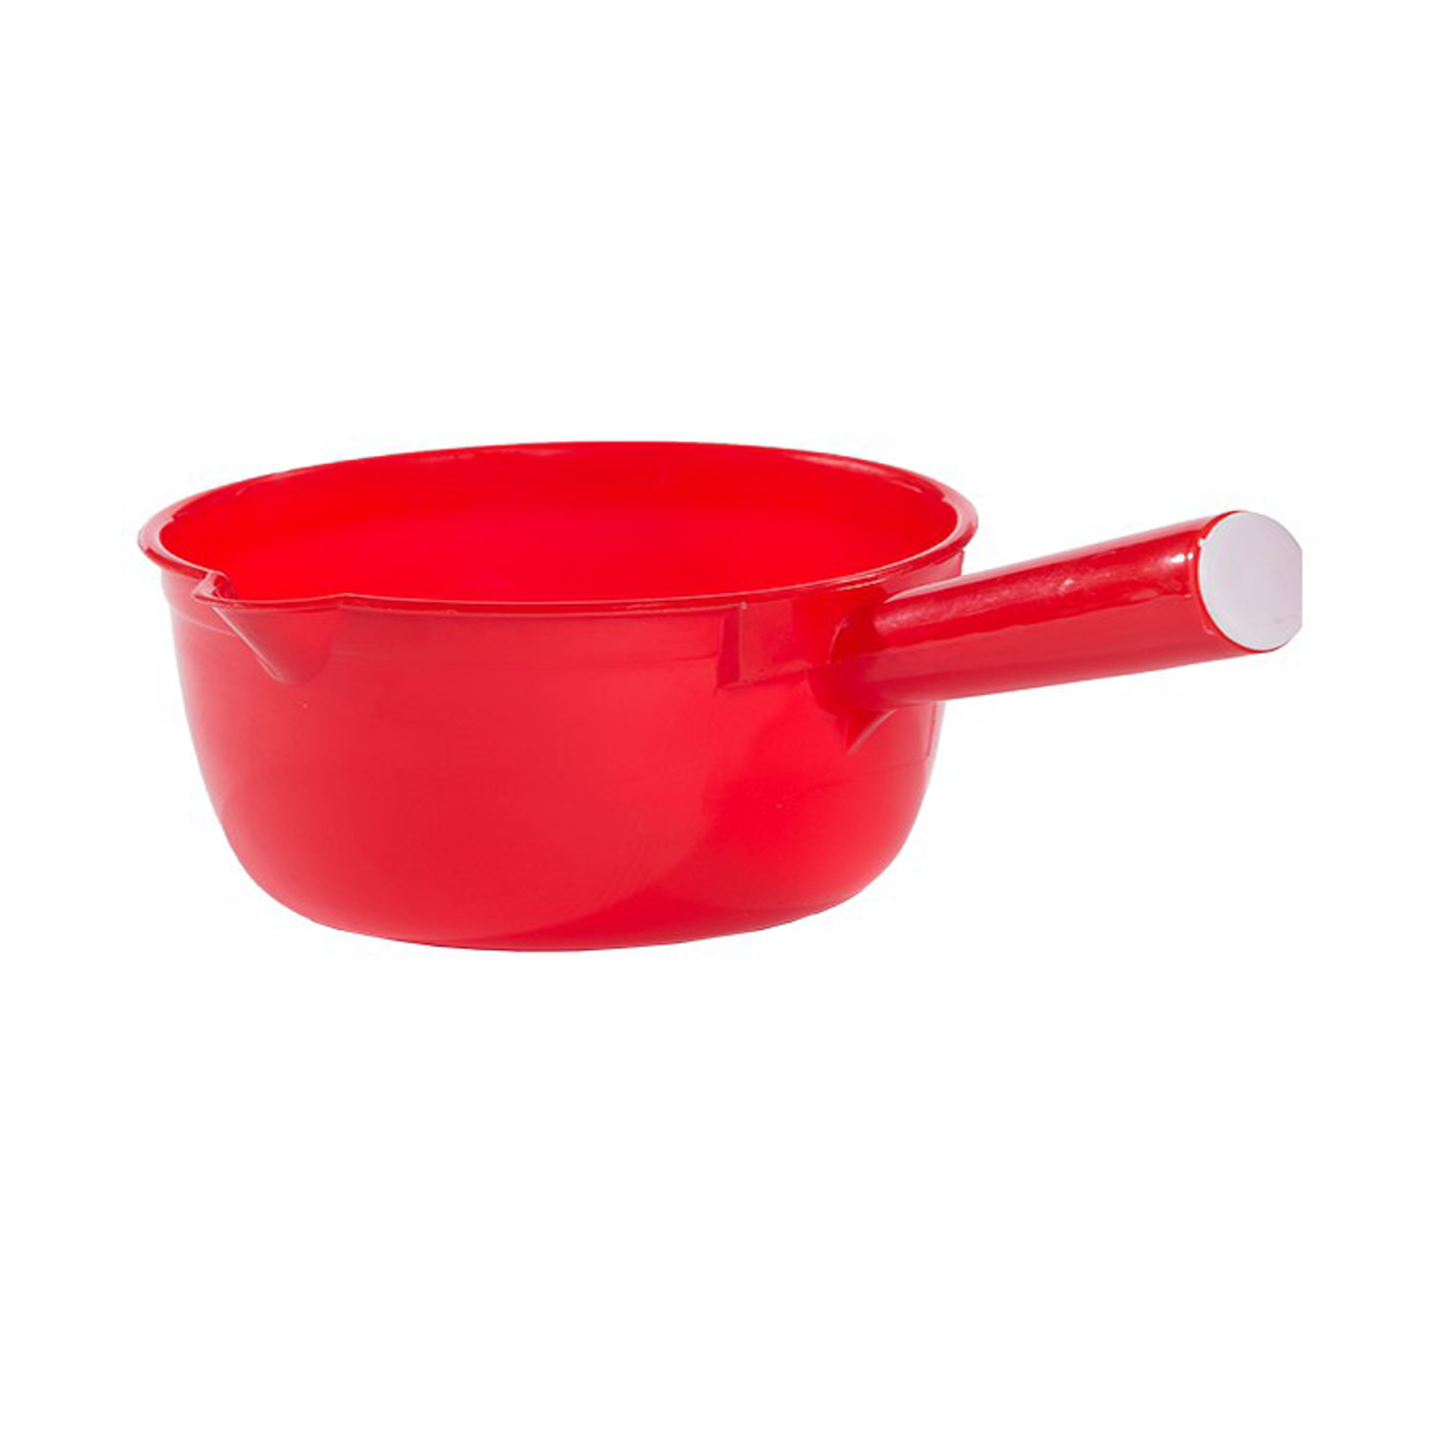 2.5L Red Plastic Ladle ( Water Scoop )